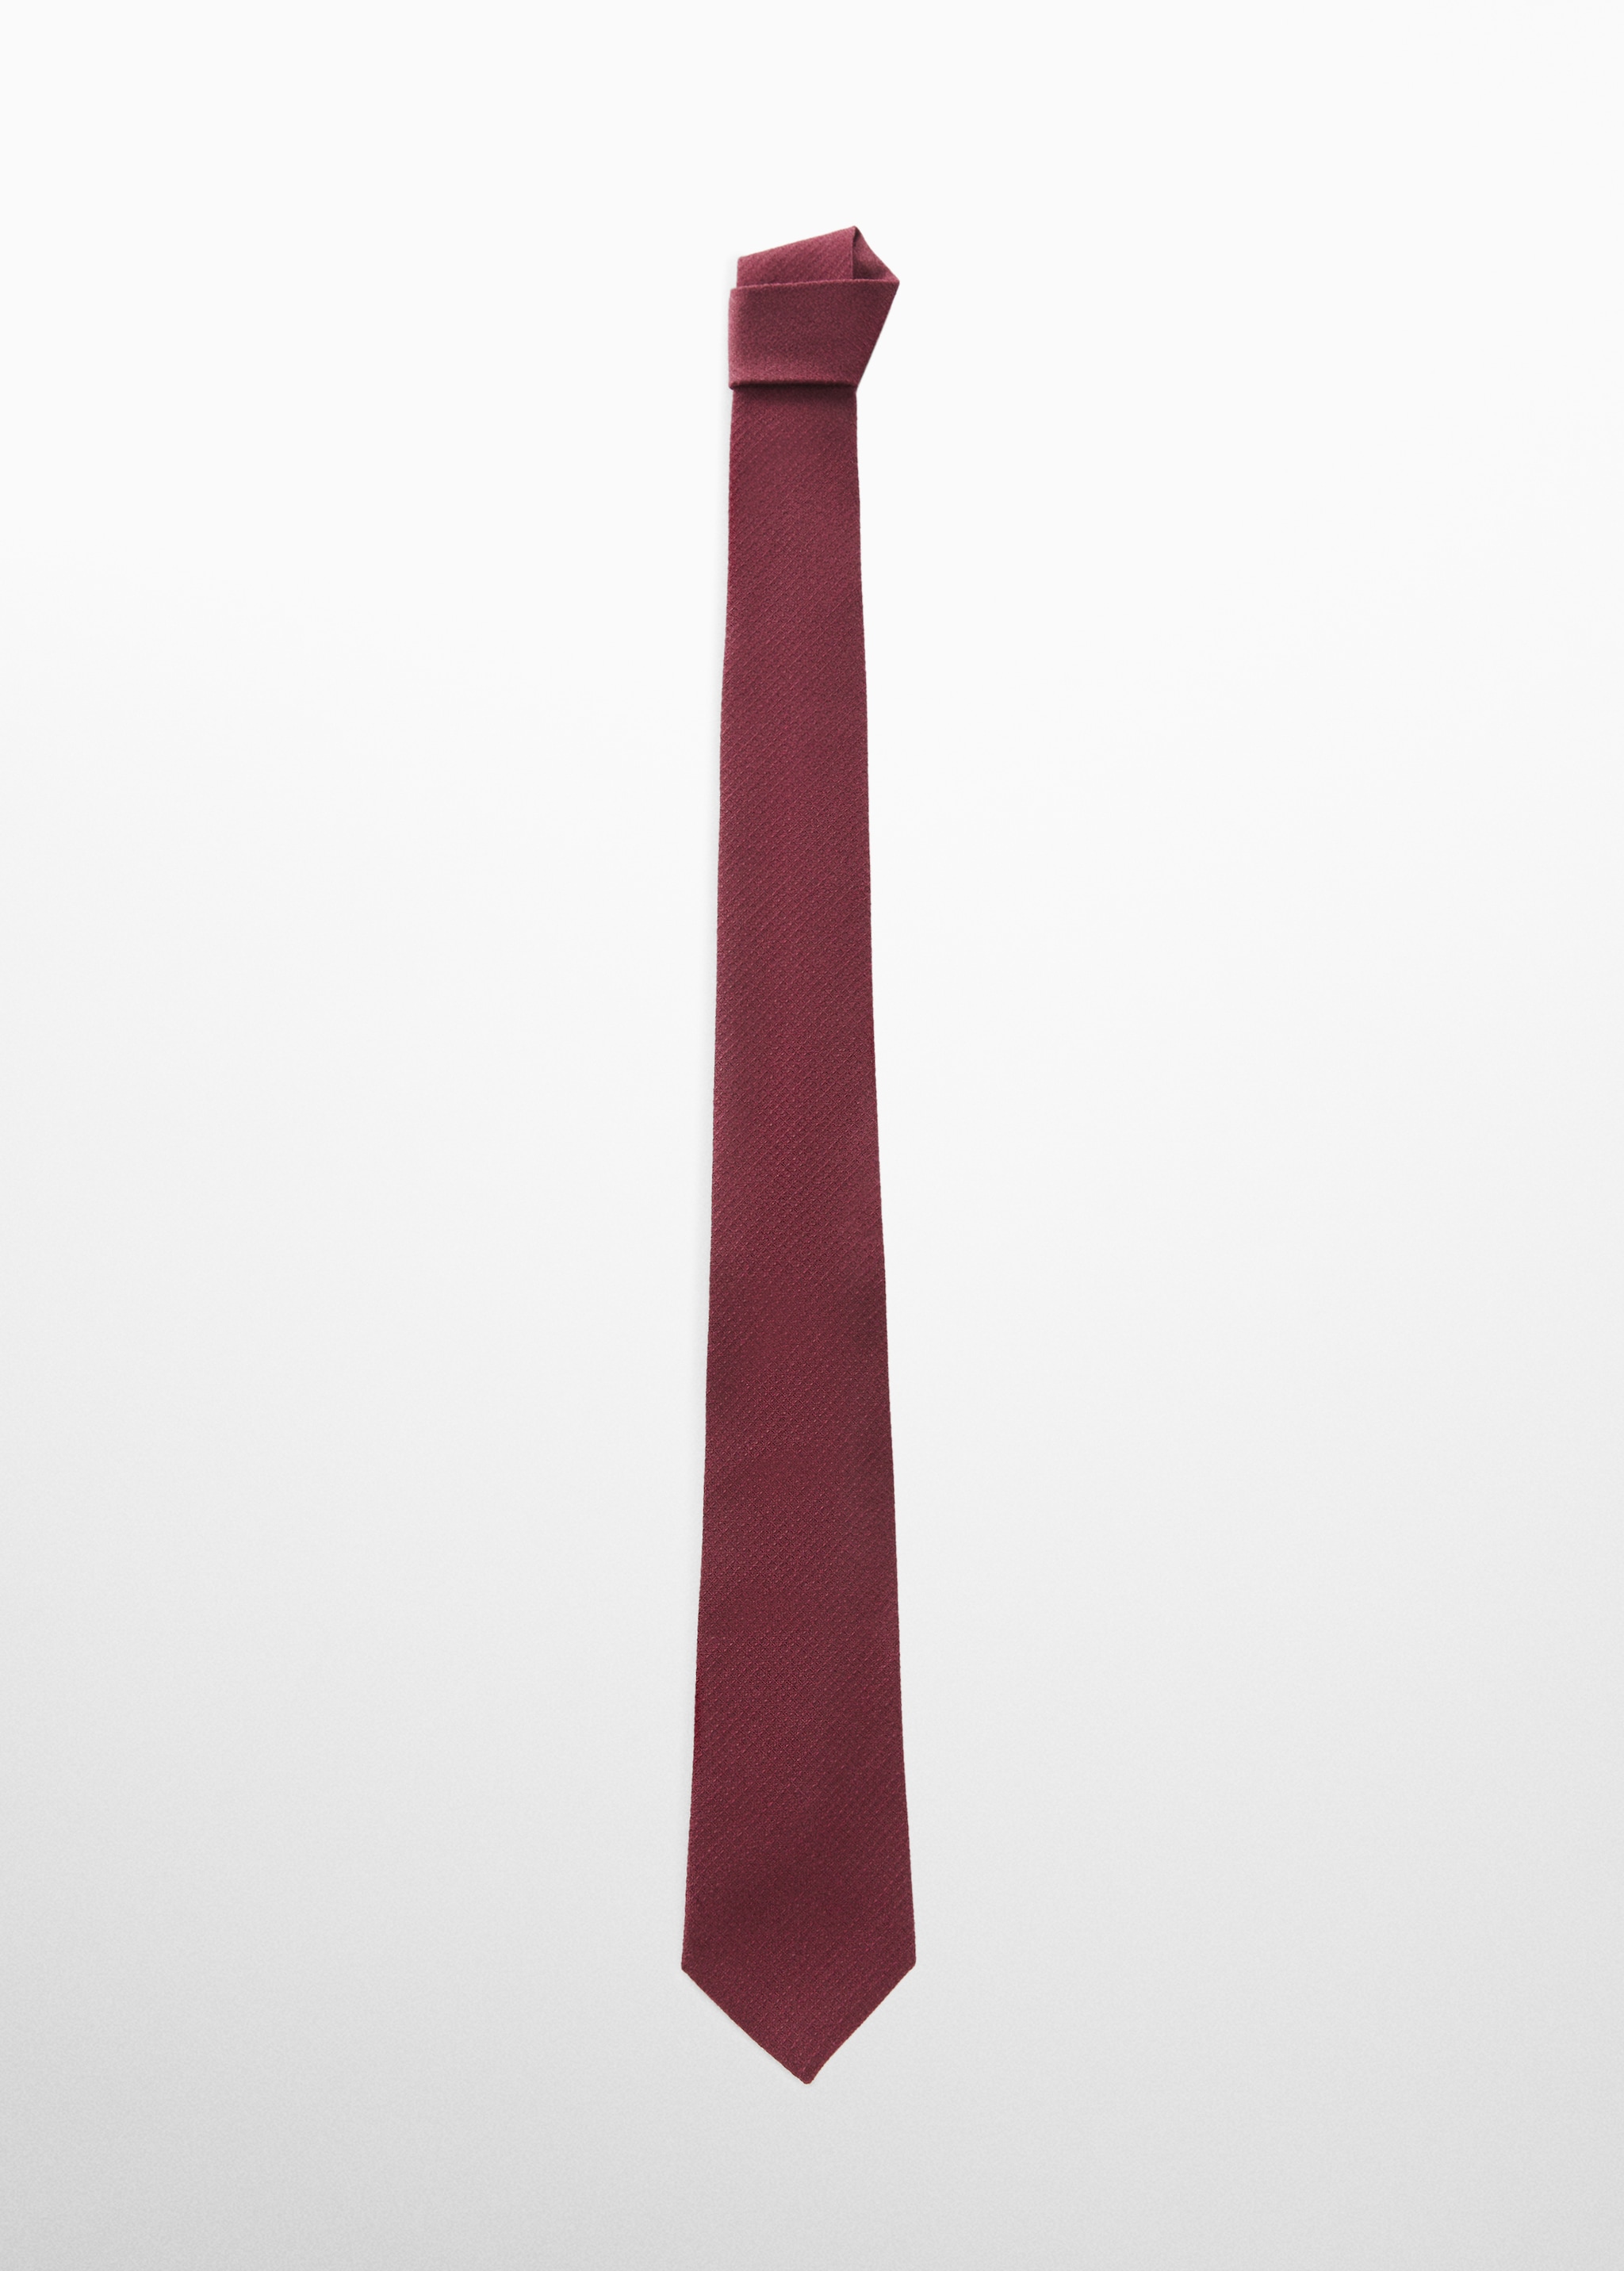 Фактурный галстук из хлопка - Изделие без модели